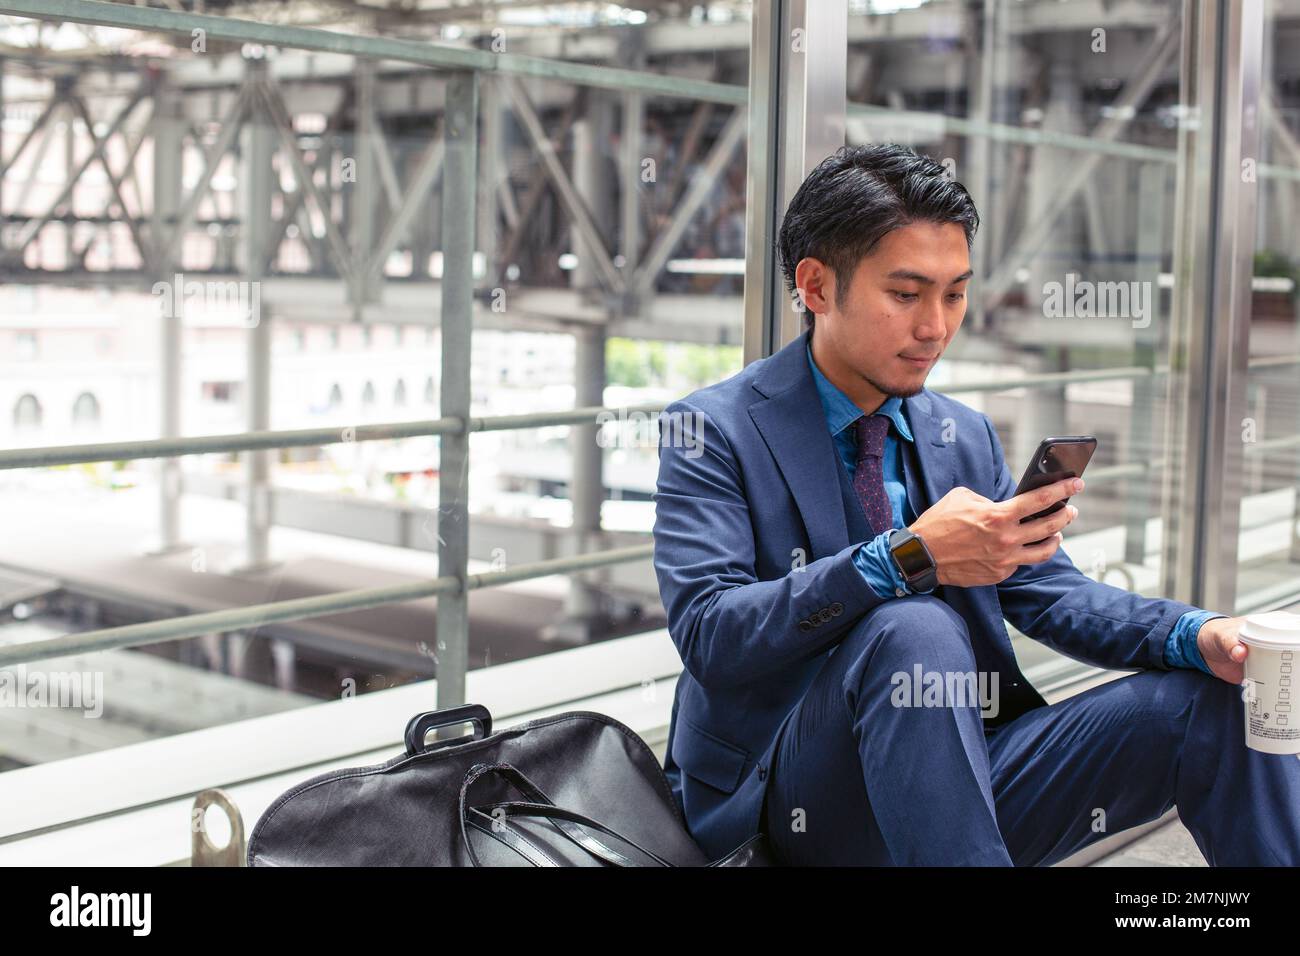 Un giovane uomo d'affari in una tuta blu in una città, guardando lo schermo del suo telefono cellulare, testando o leggendo un messaggio. Foto Stock